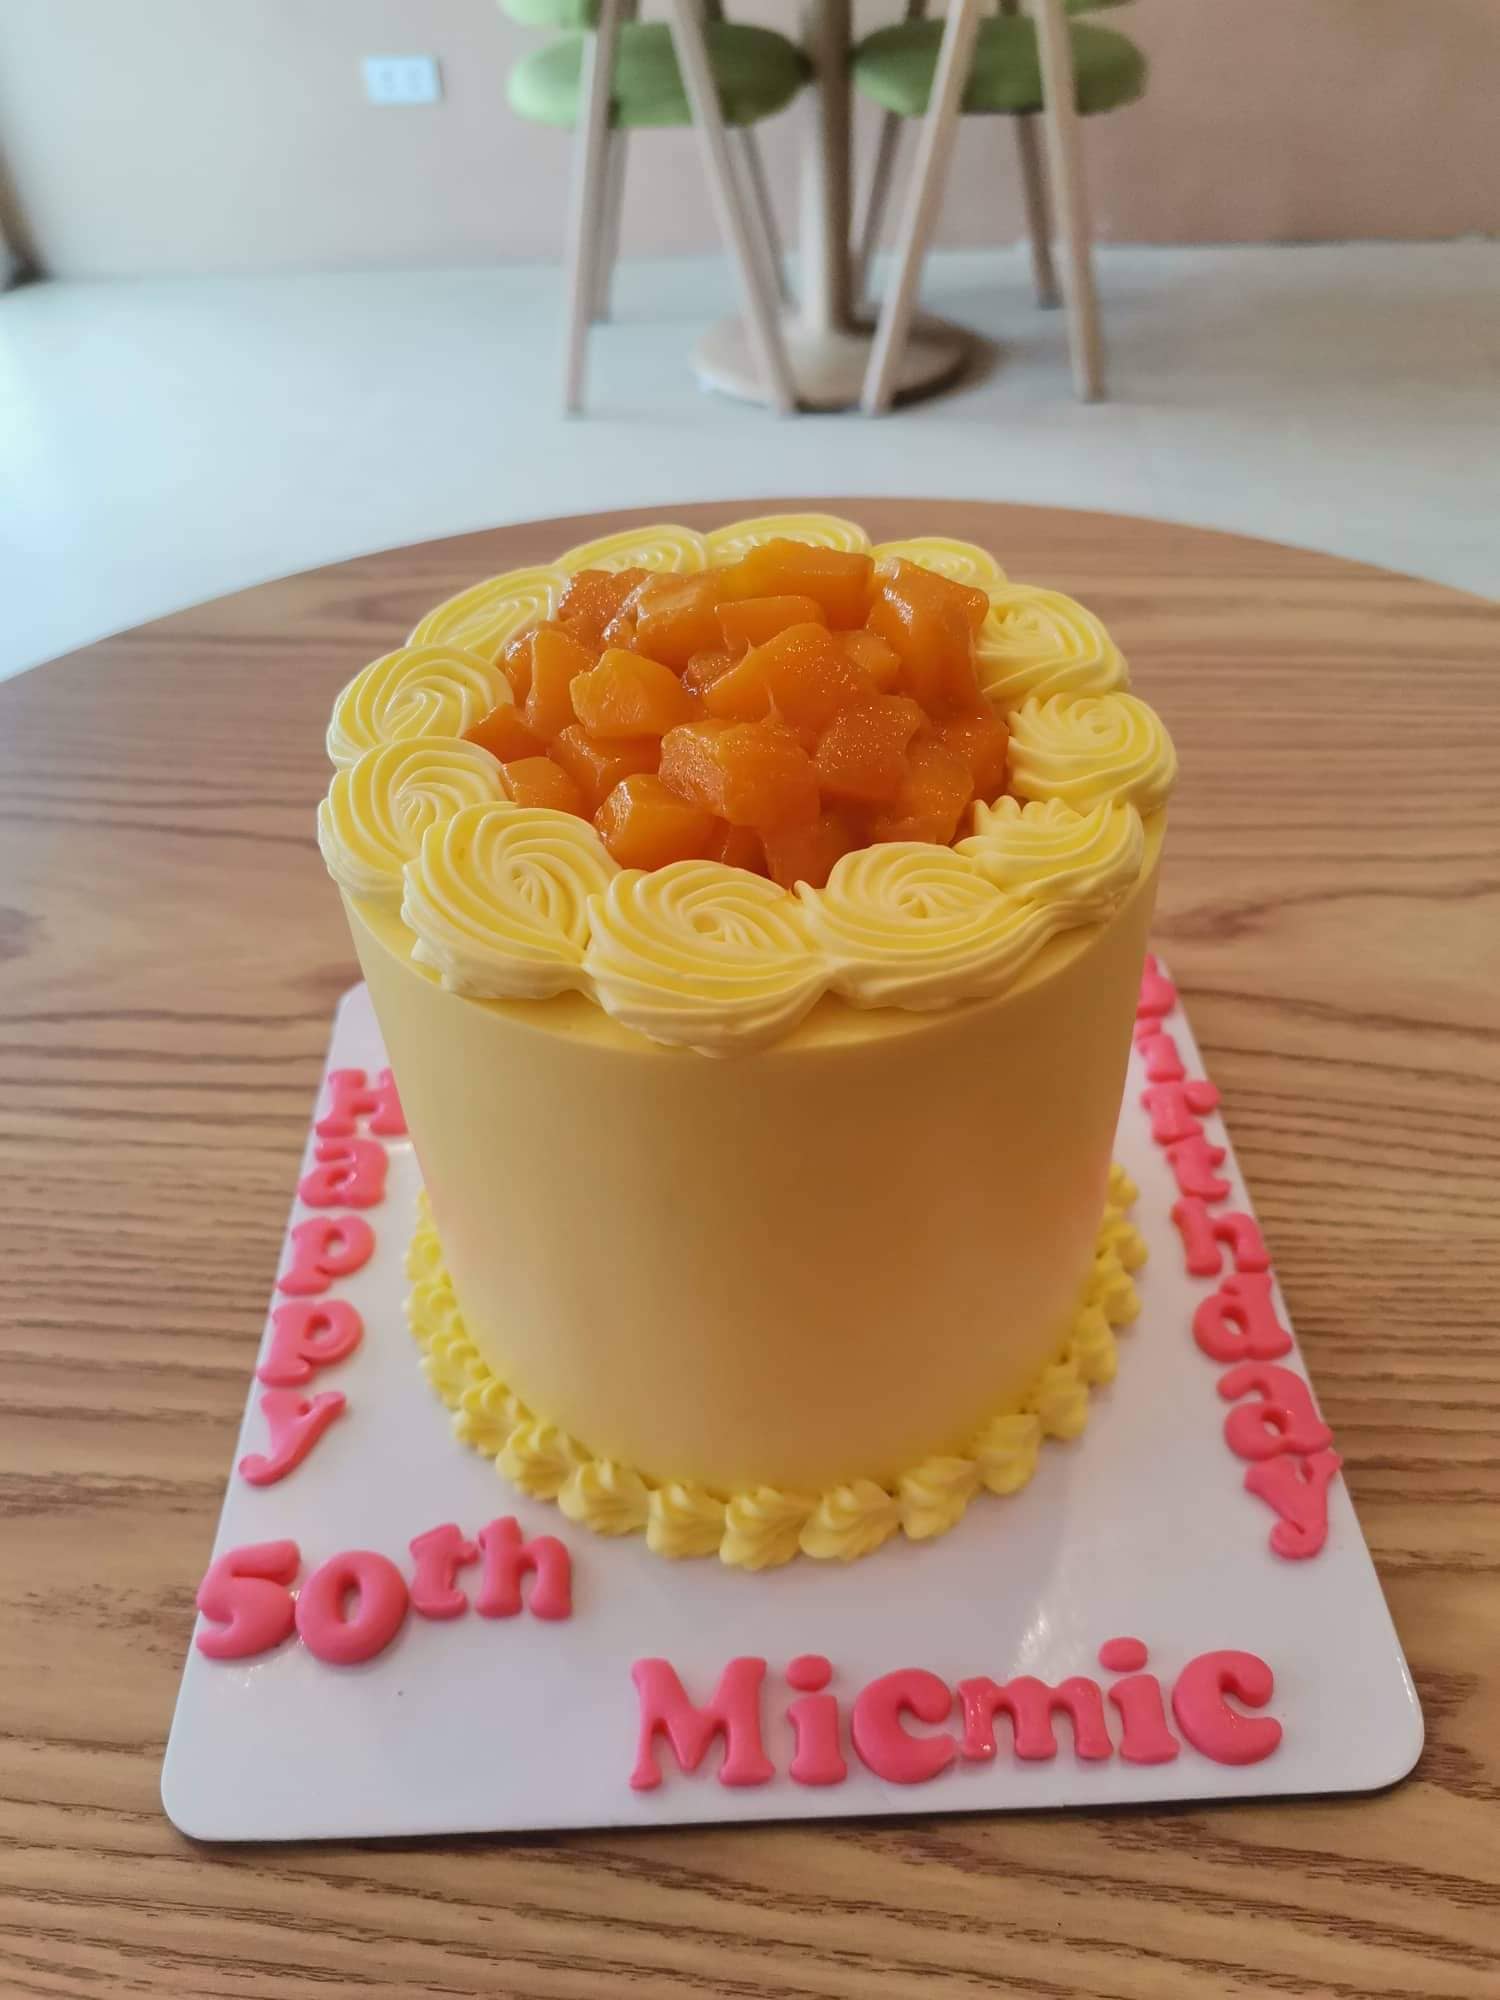 15 Best Korean Minimalist Cakes in Manila - FunEmpire